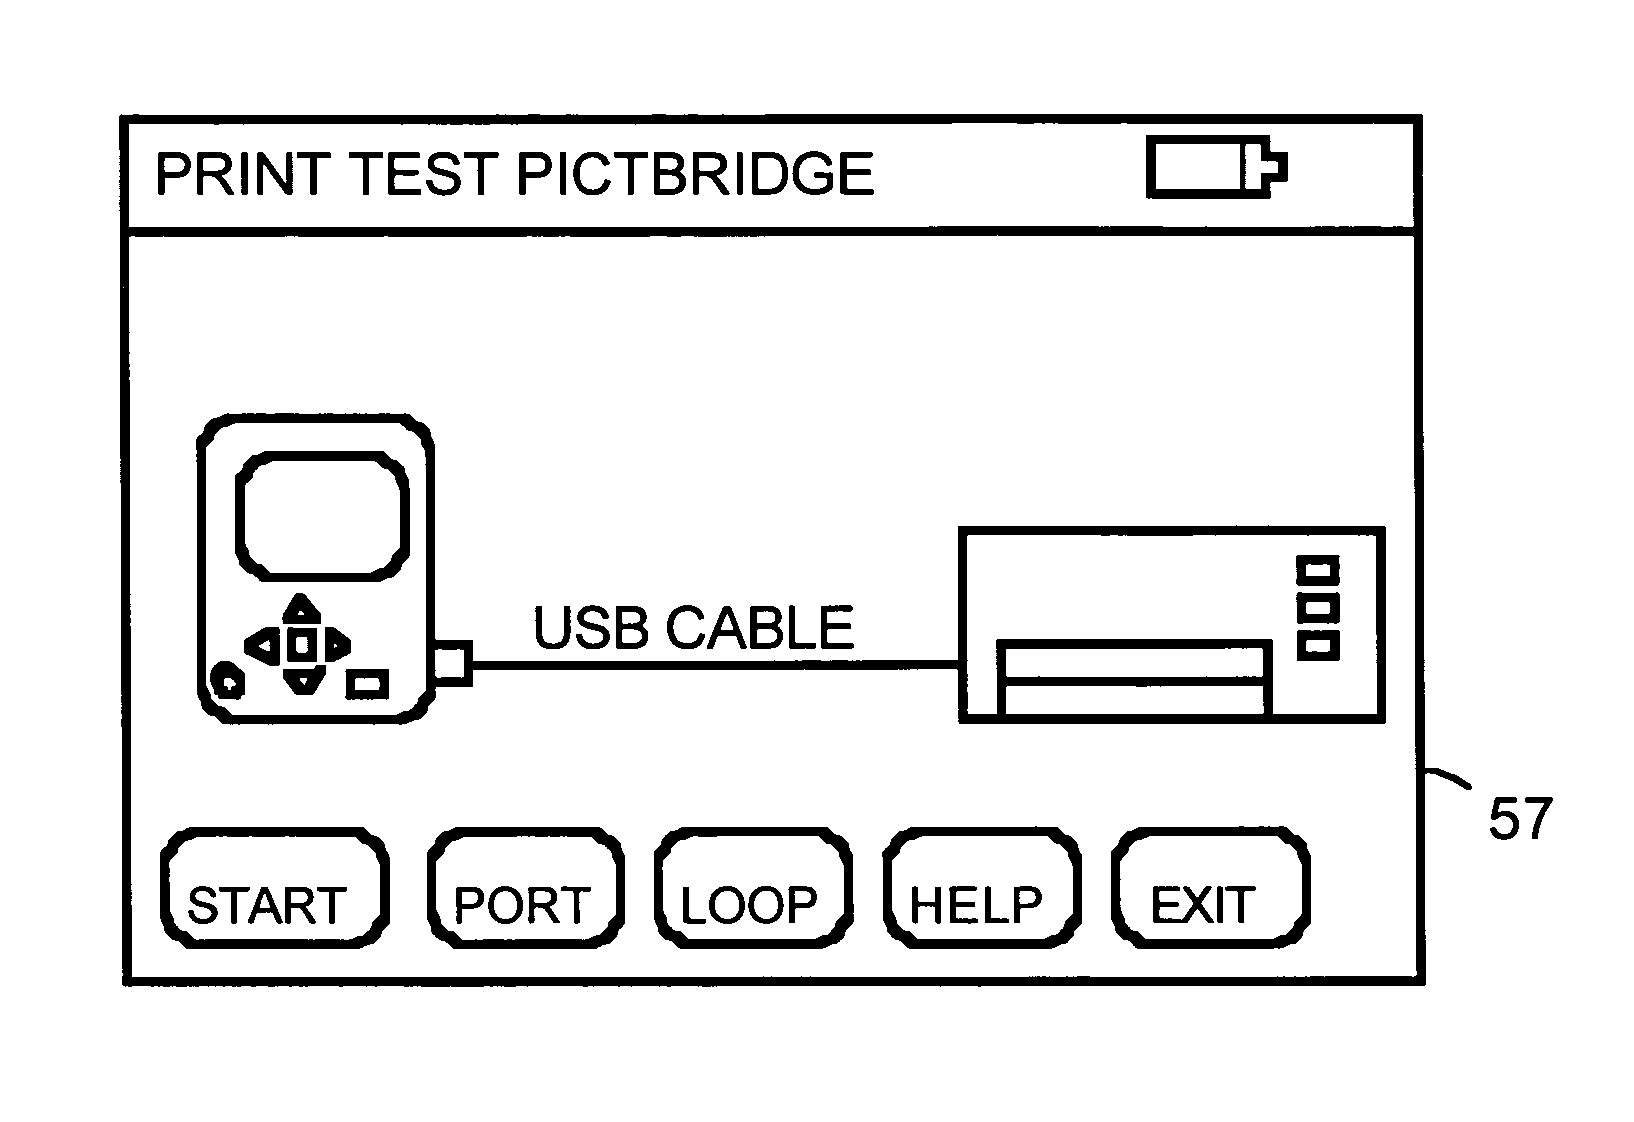 USB device with PictBridge capability